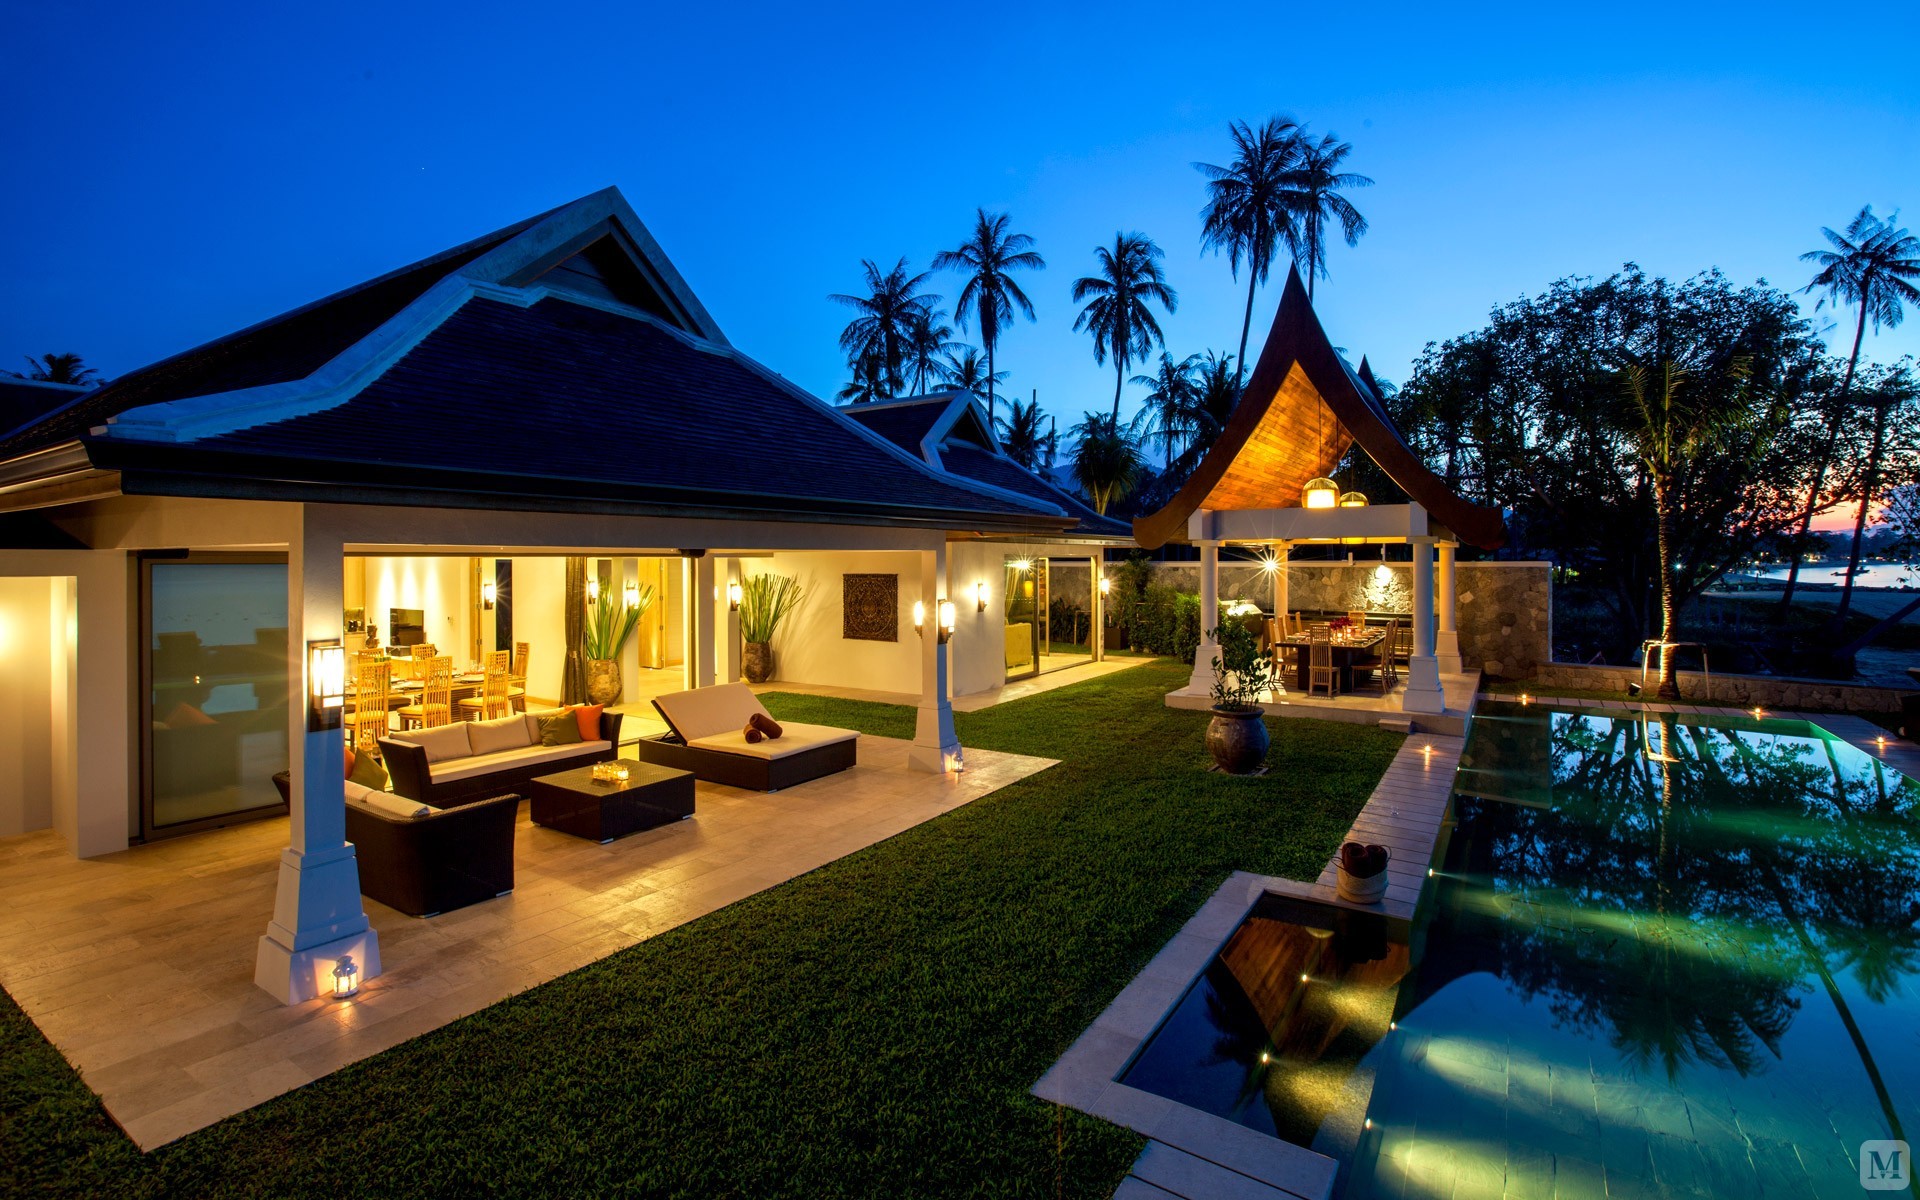 东南亚风格是一种结合了东南亚民族岛屿特色及精致文化品位的家居设计